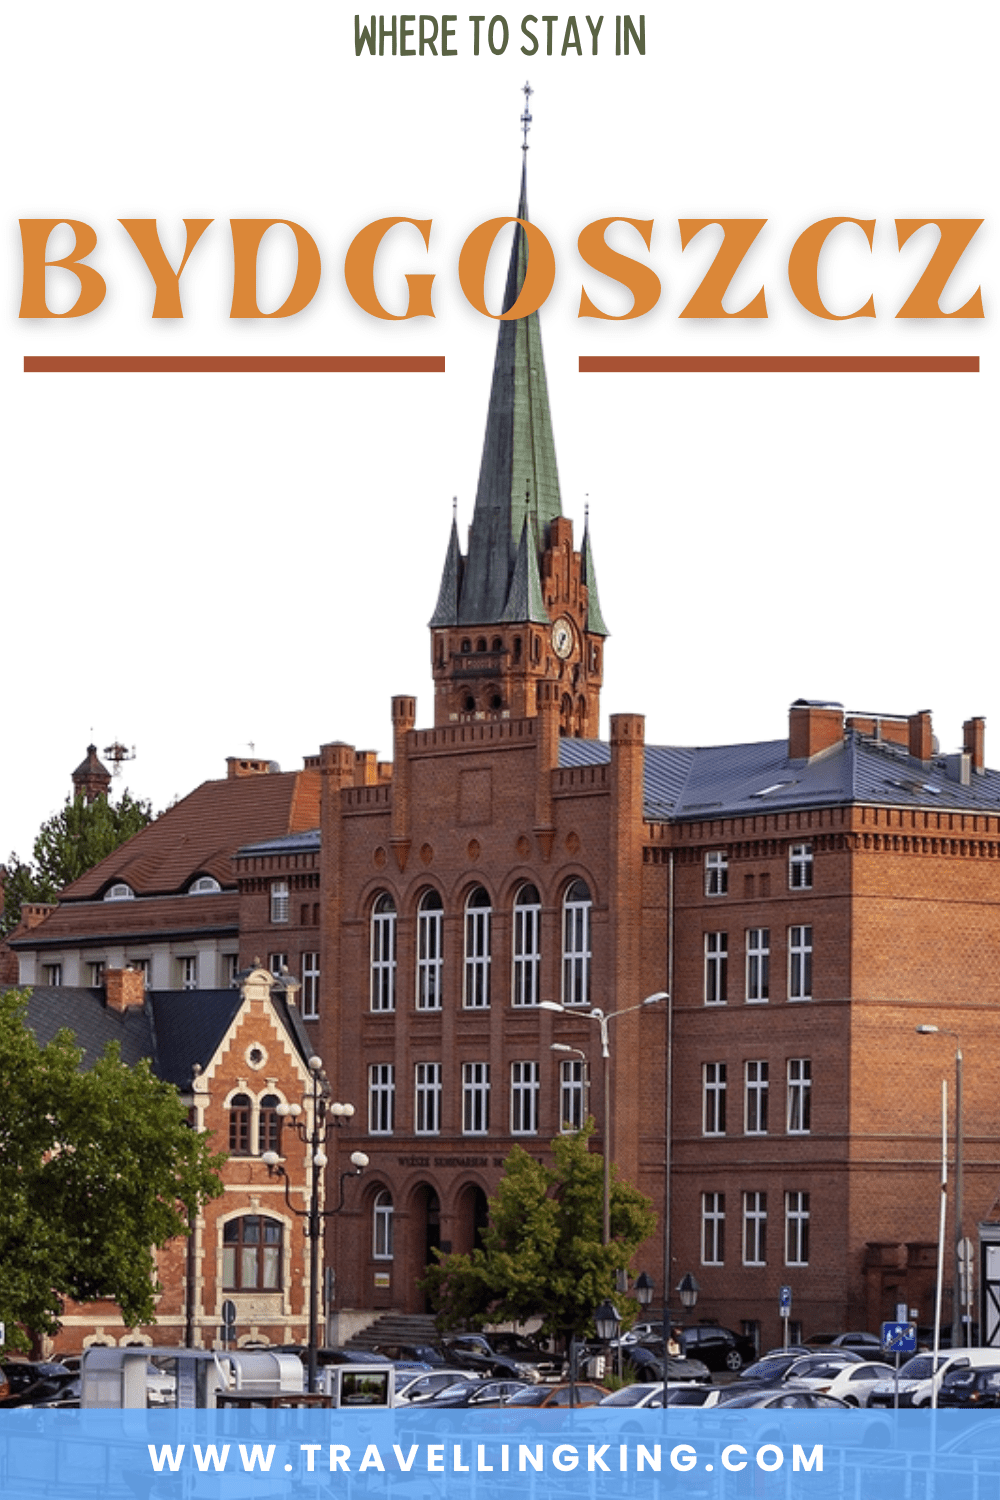 Where to stay in Bydgoszcz